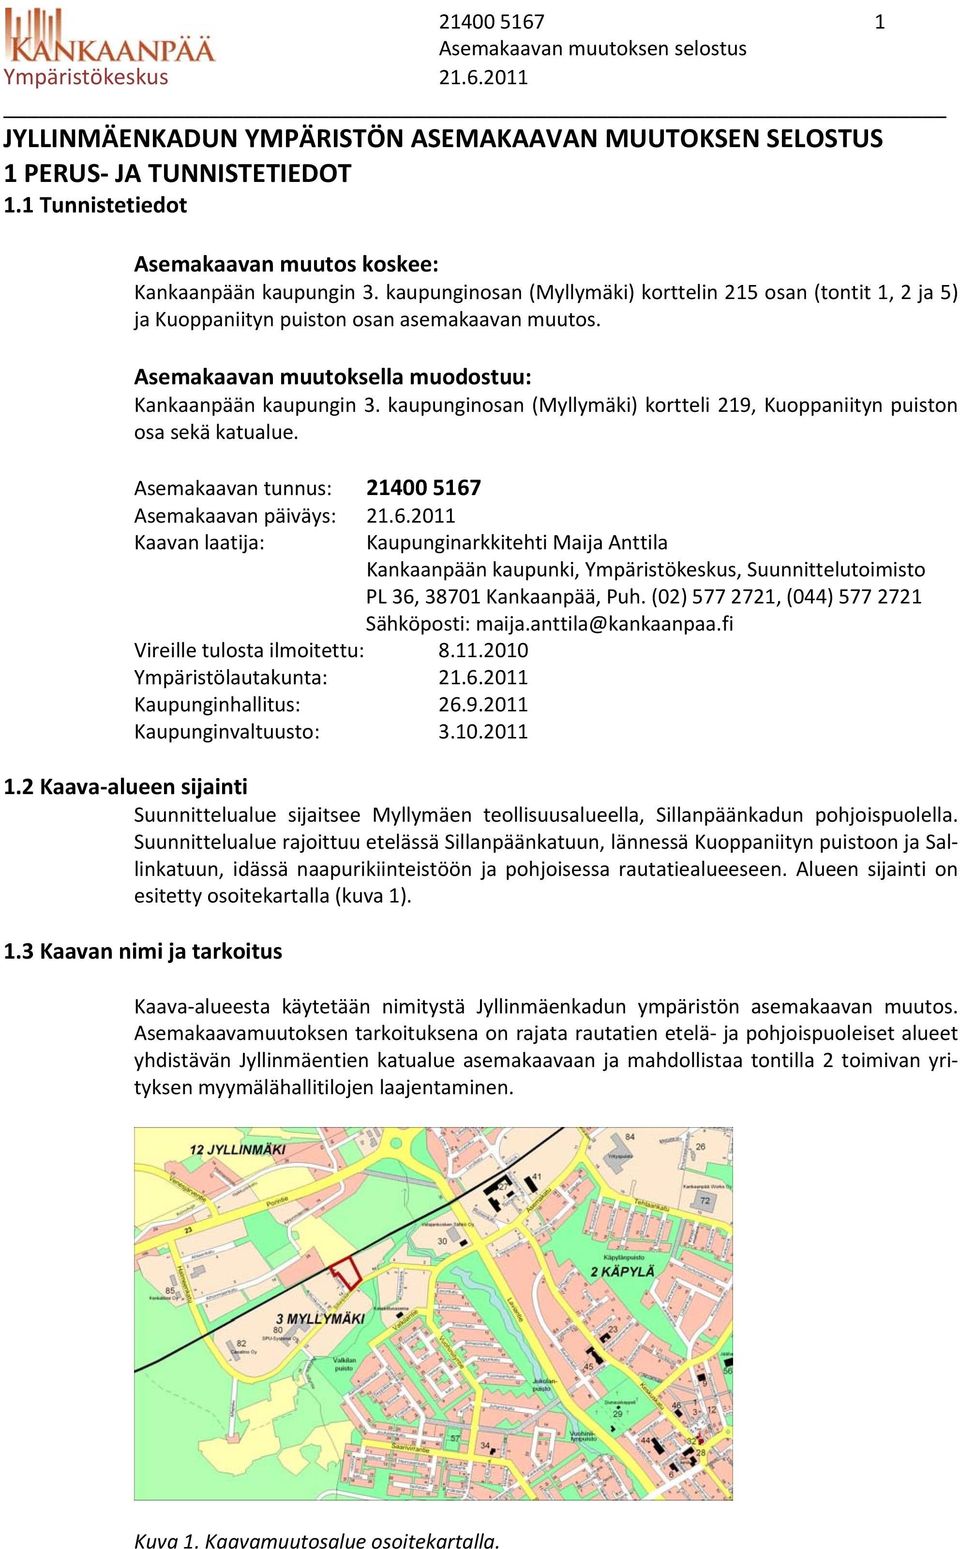 Asemakaavan muutoksella muodostuu: Kankaanpään kaupungin 3. kaupunginosan (Myllymäki) kortteli 219, Kuoppaniityn puiston osa sekä katualue. Asemakaavan tunnus: 21400 5167